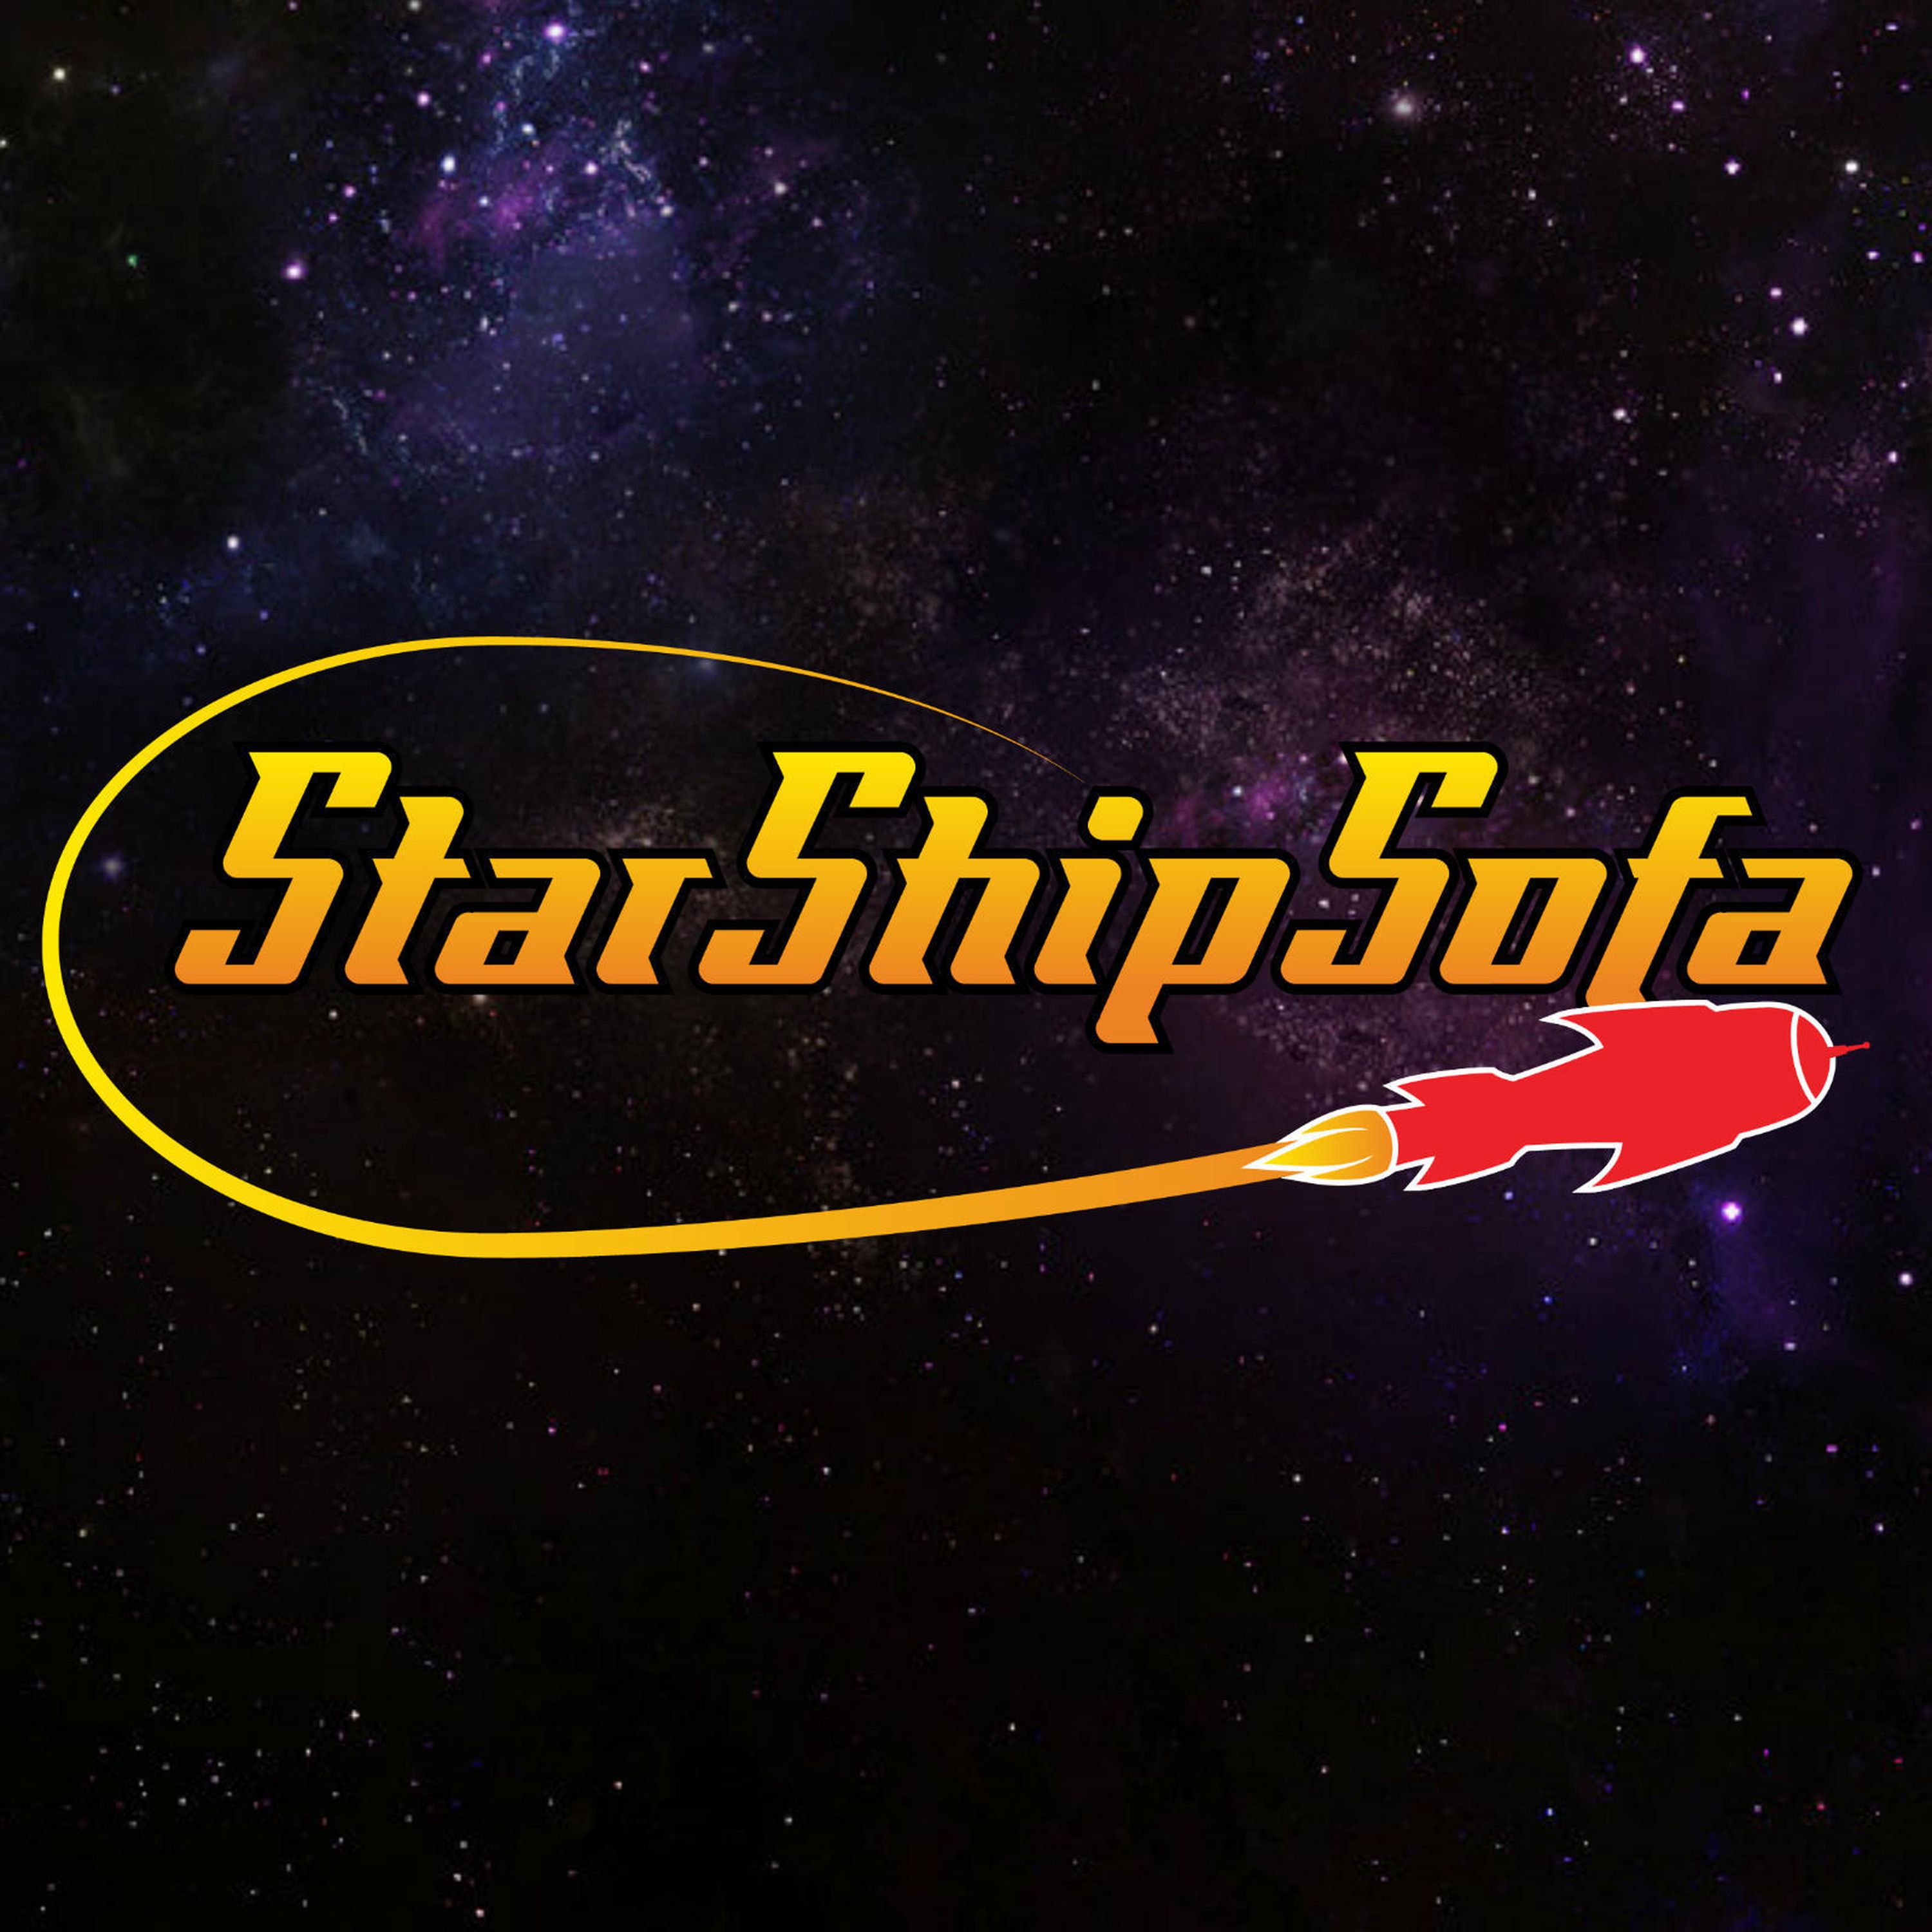 StarShipSofa No 605 Chad Gayle